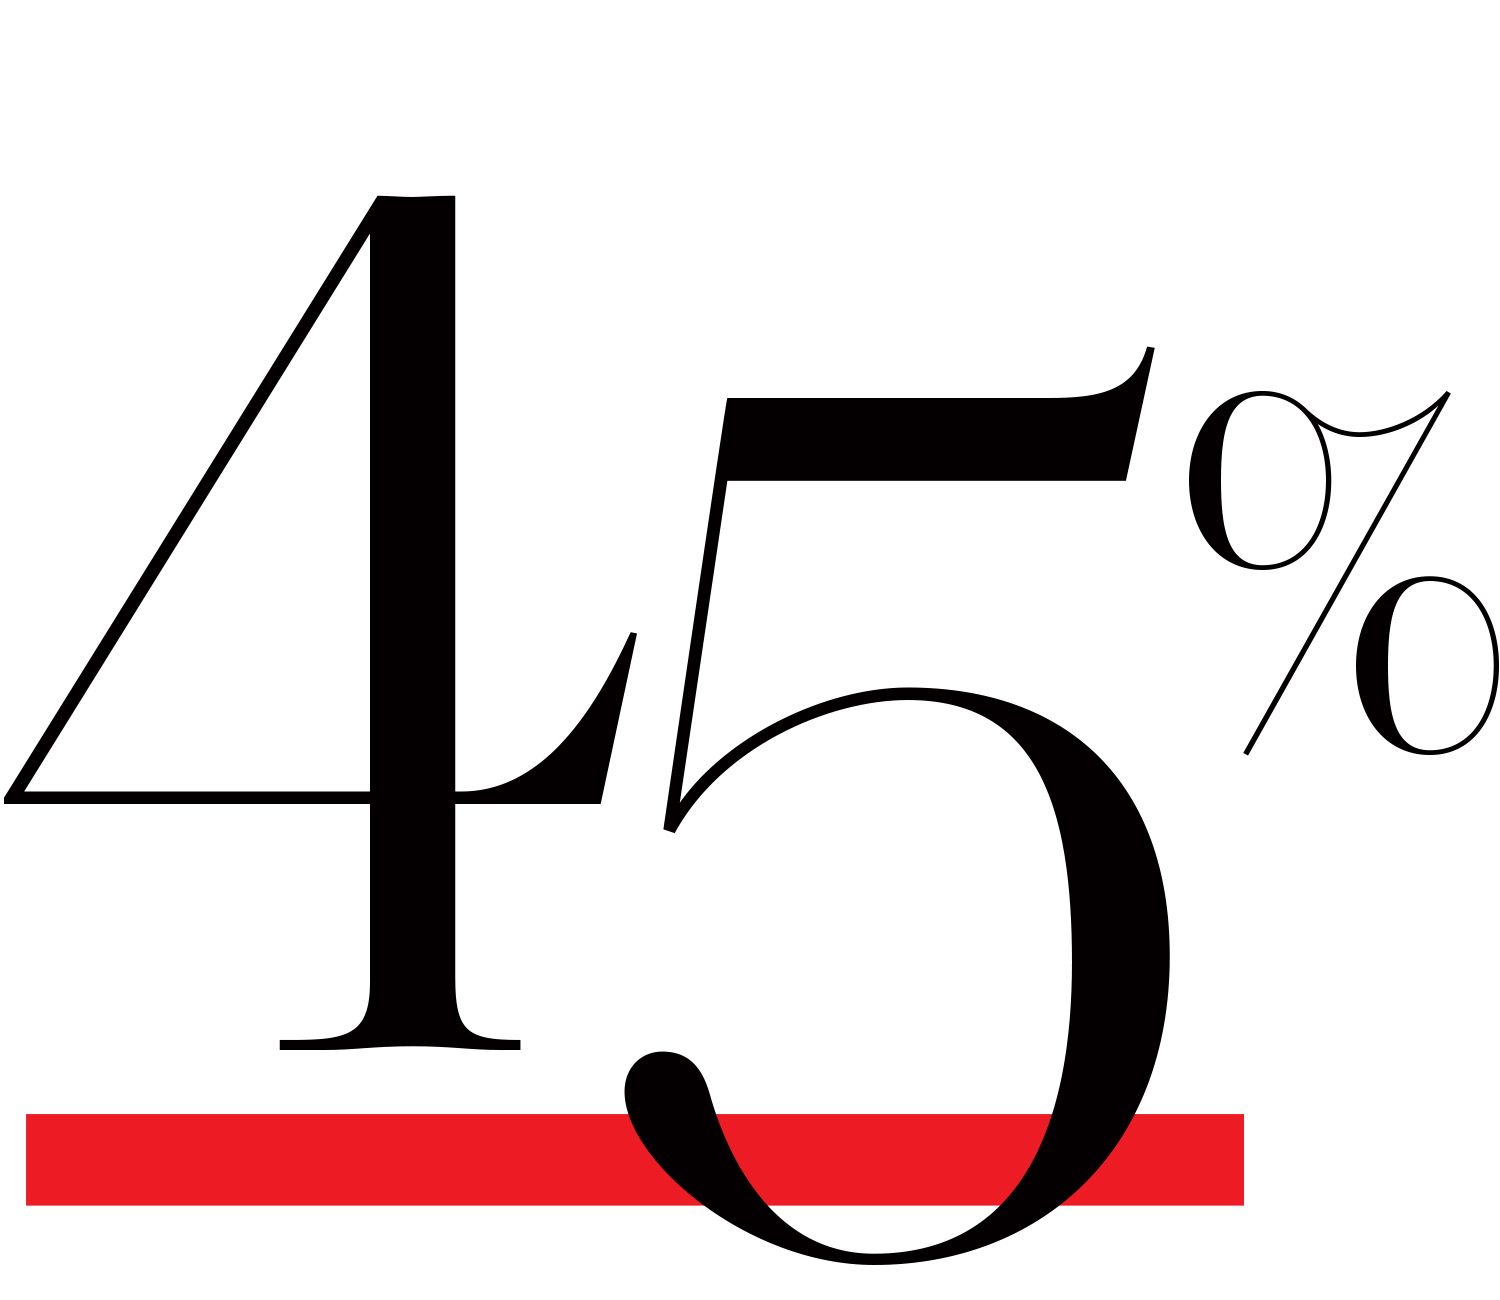 45 percent